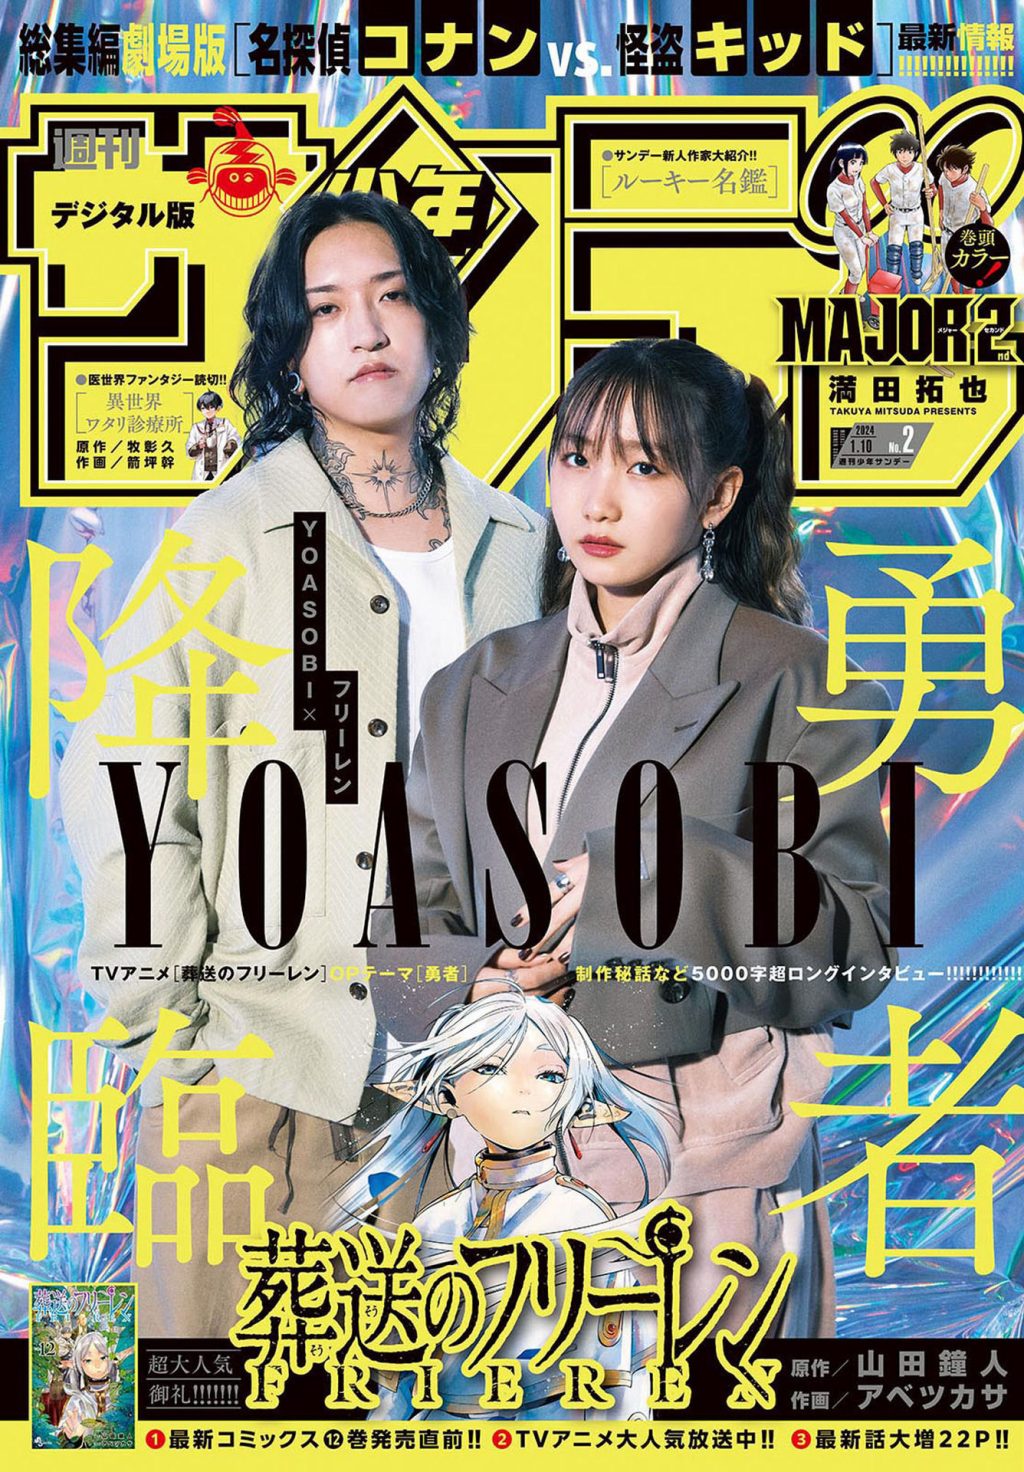 Yofukashi no Uta #2 - Vol. 2 (Issue)